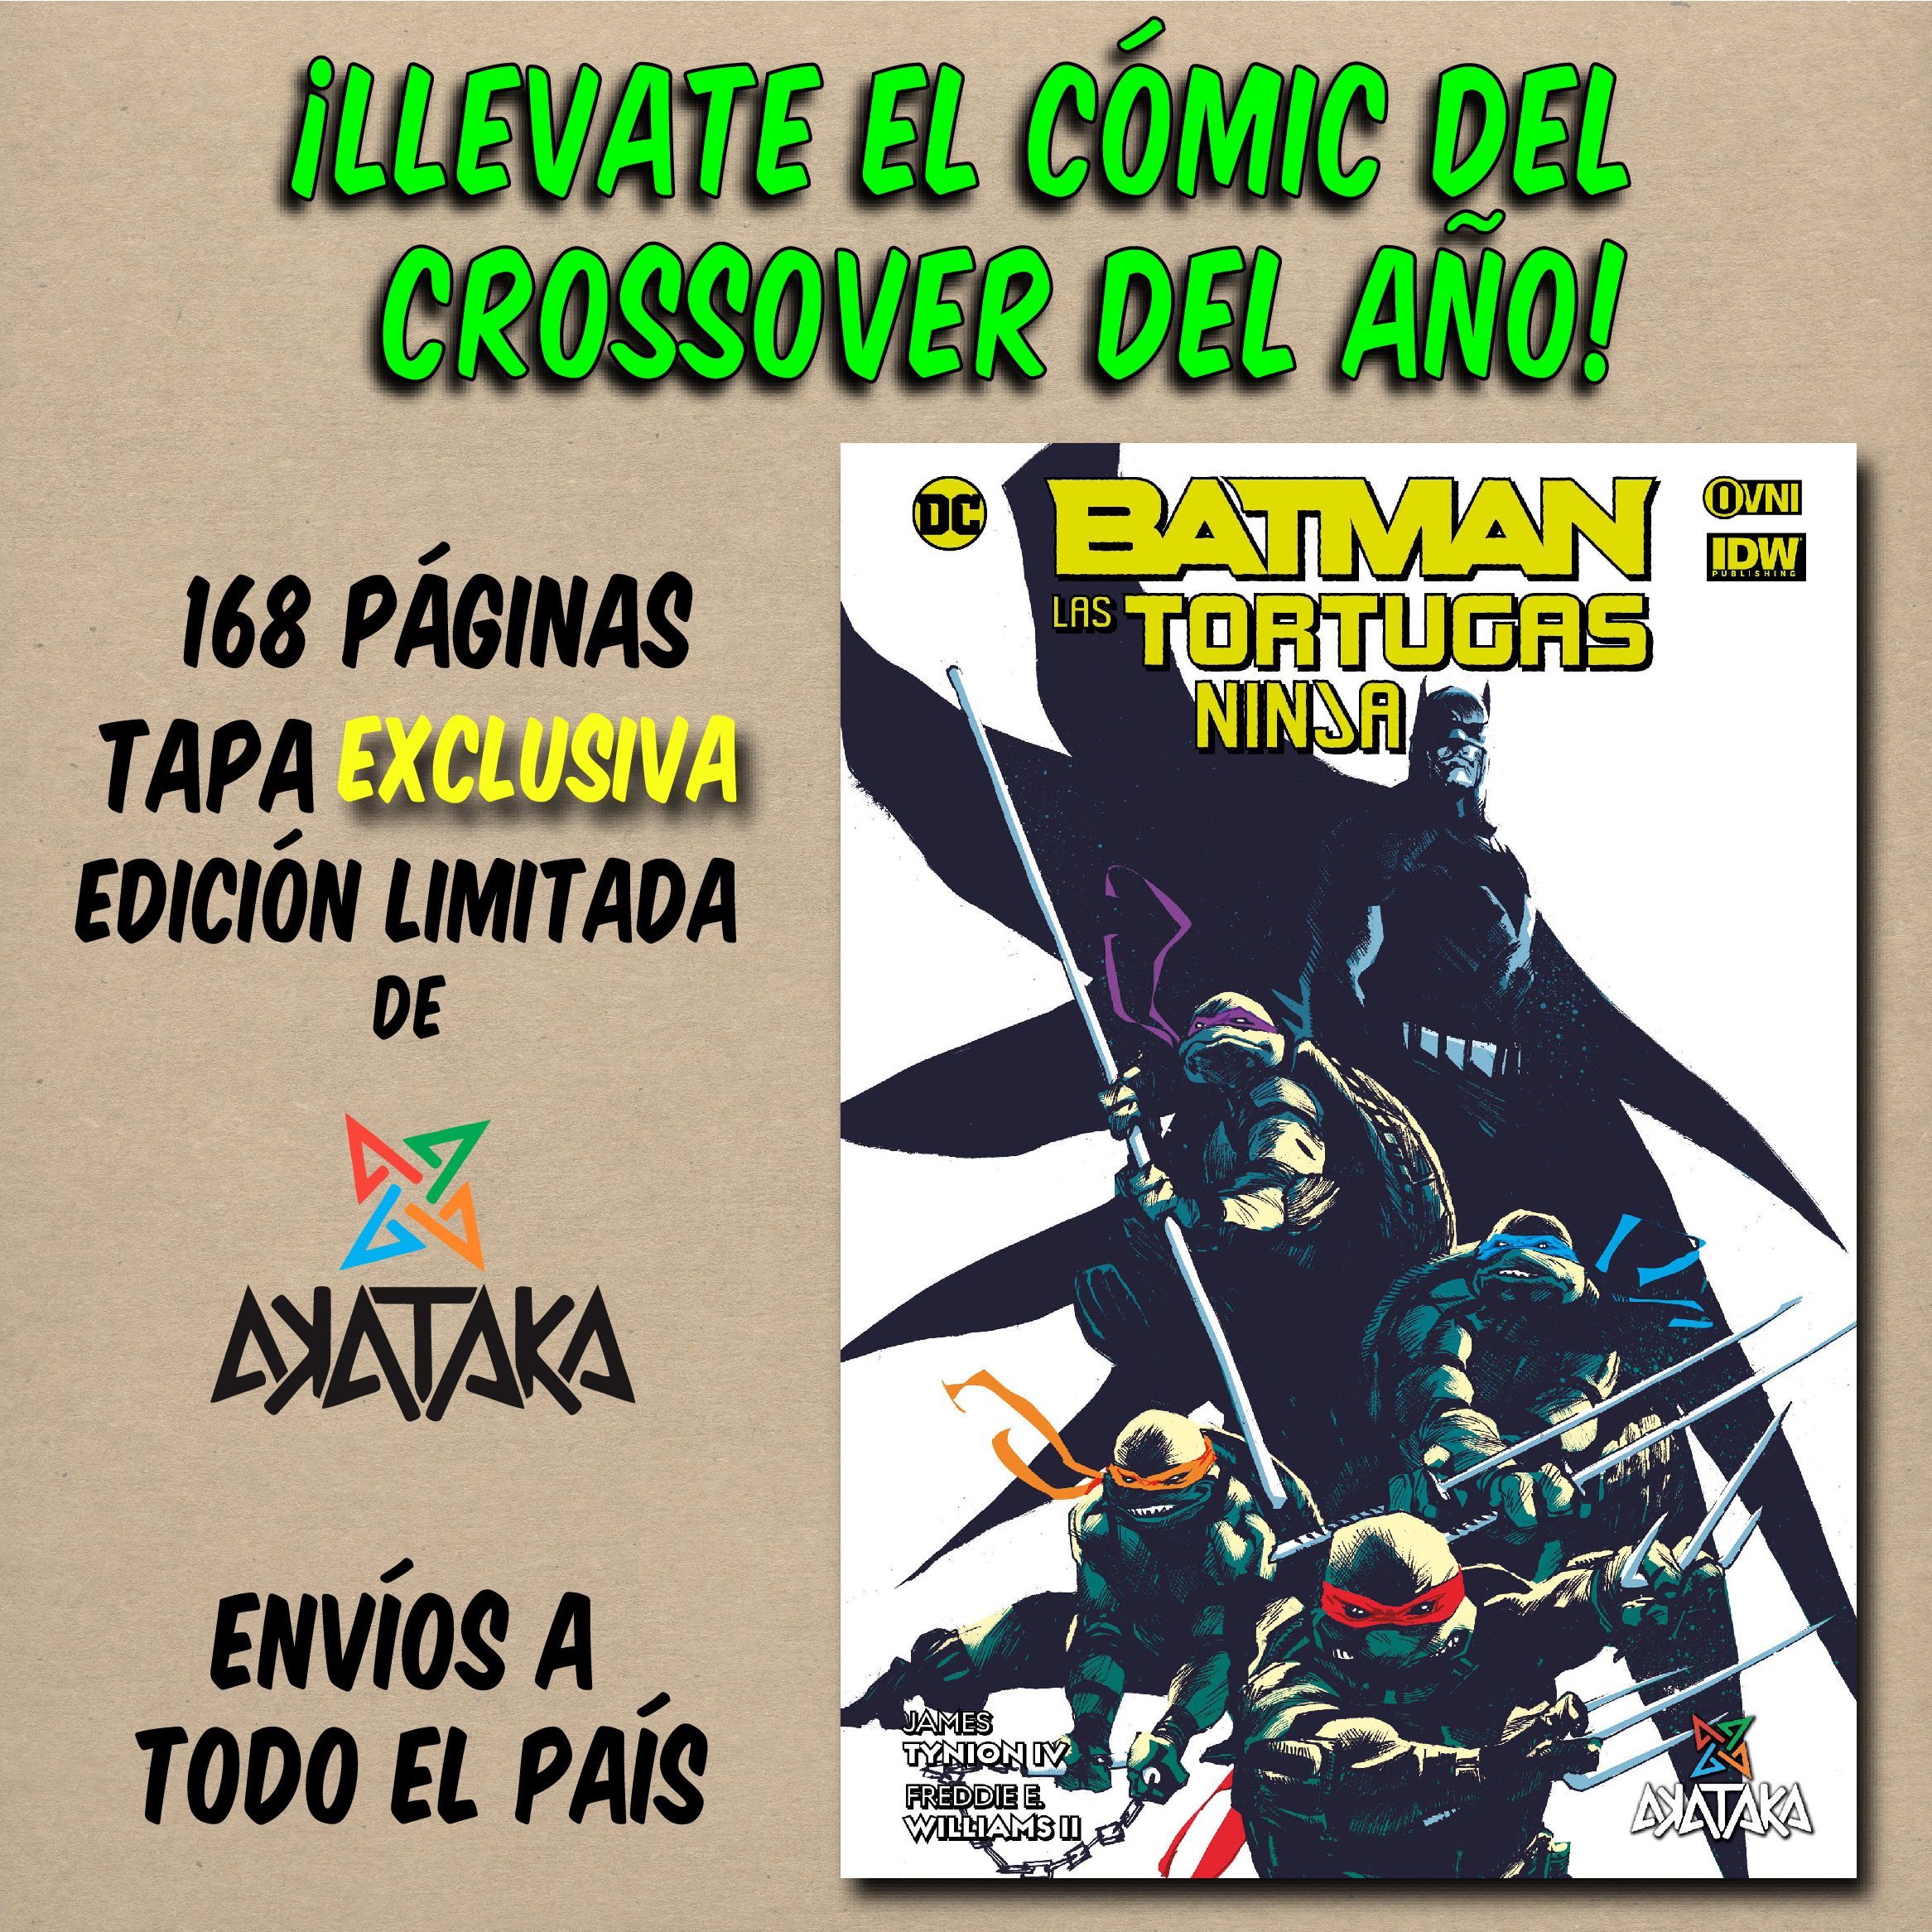 Batman y tortugas ninjas akataka-02-02